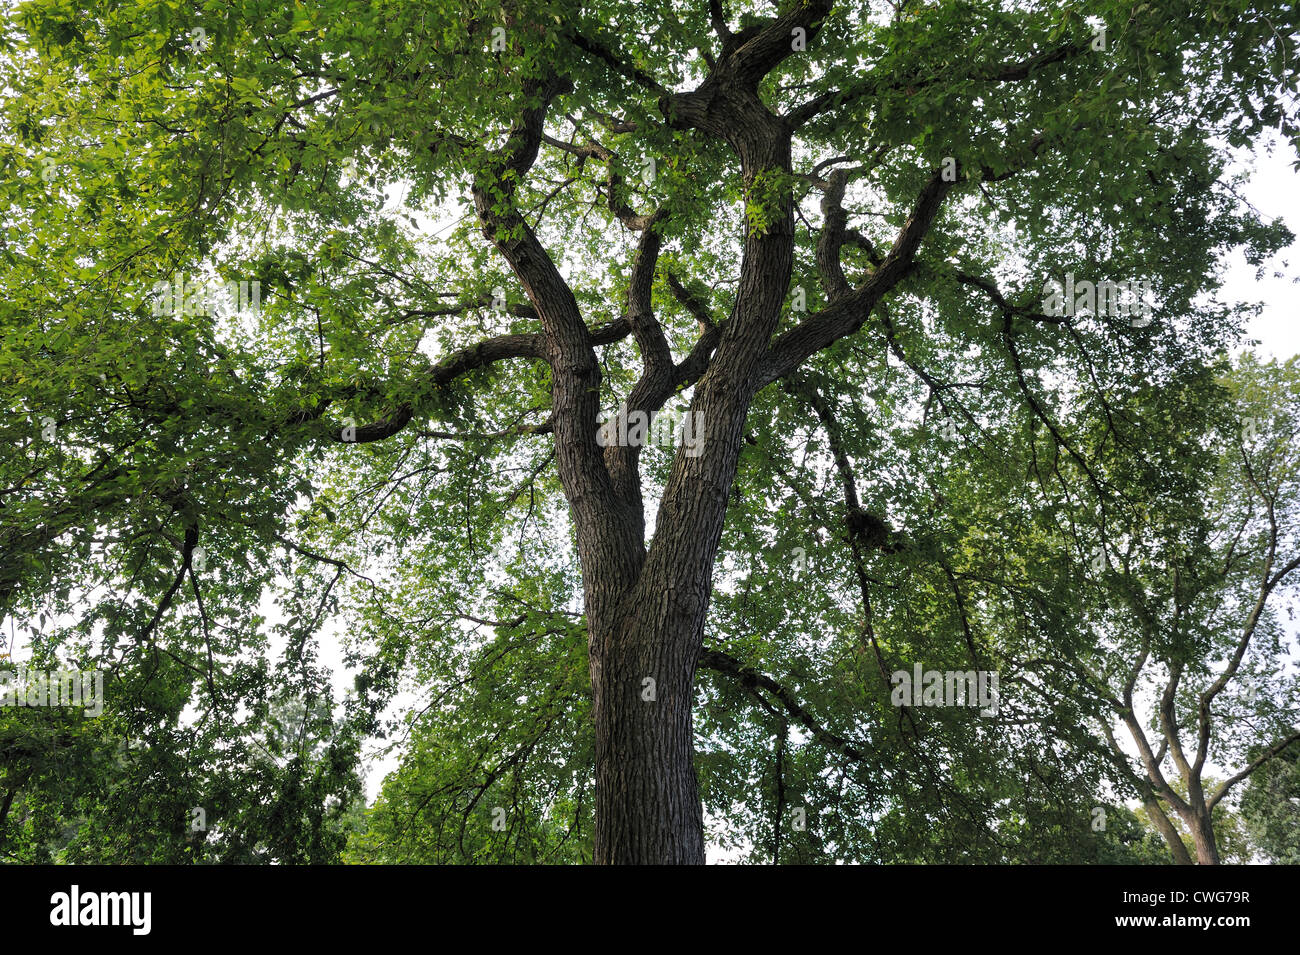 Eines der majestätischen amerikanische Ulmen im Tompkins Square Park in East Village in Manhattan. Der Baum ist etwa 150 Jahre alt. Stockfoto